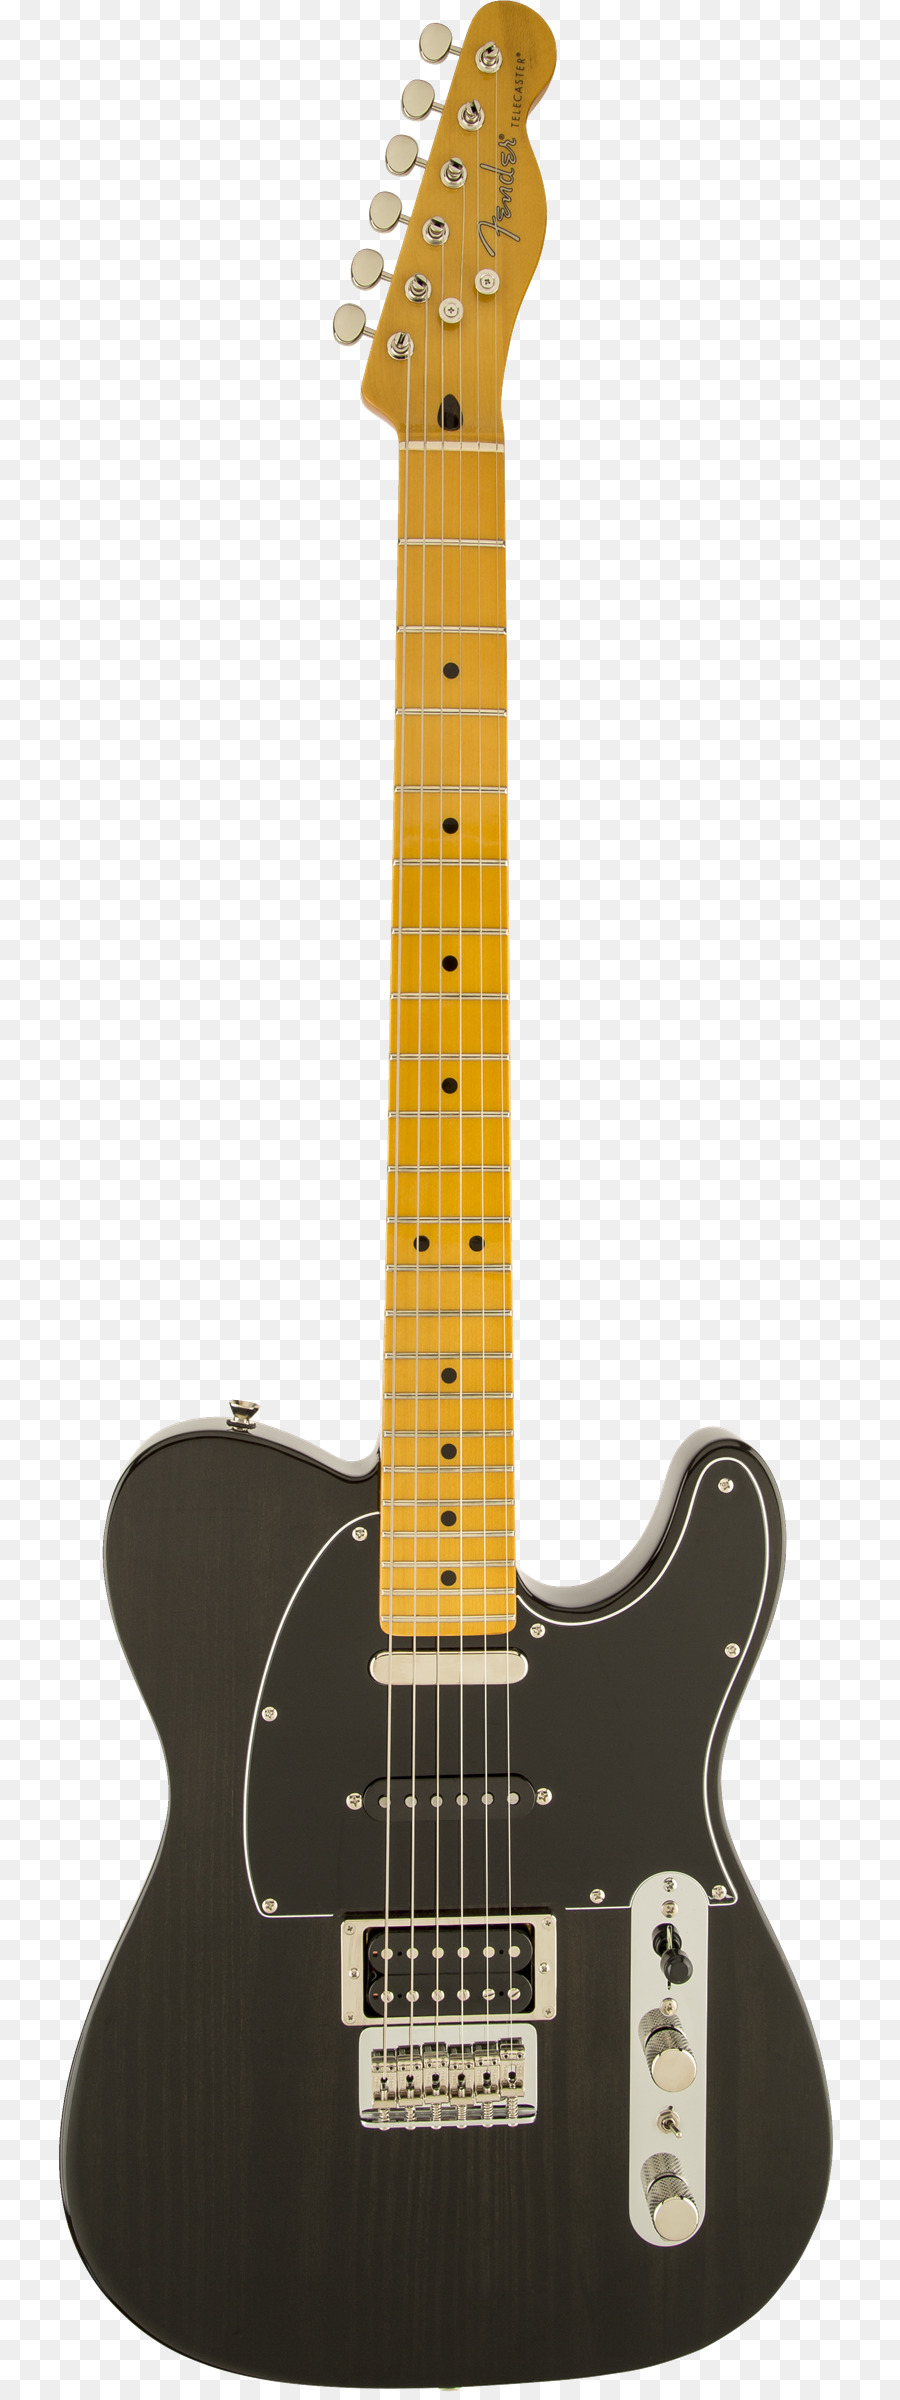 Fender Telecaster Sunburst E-Gitarre Squier Fender Musical Instruments Corporation - E Gitarre